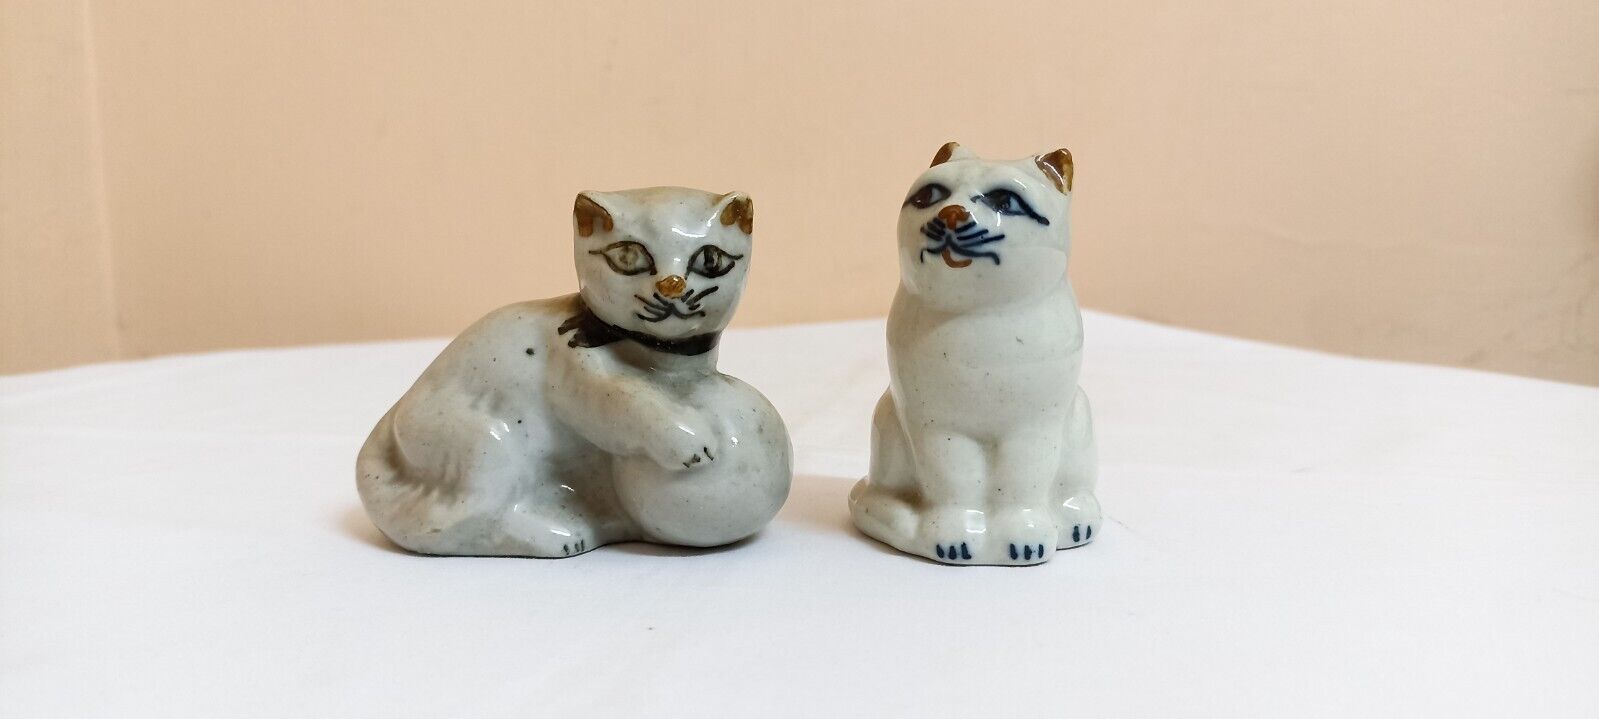 Vintage Antique Japan Porcelain Statue Cat Multi Colors Exquisite Figurine Old